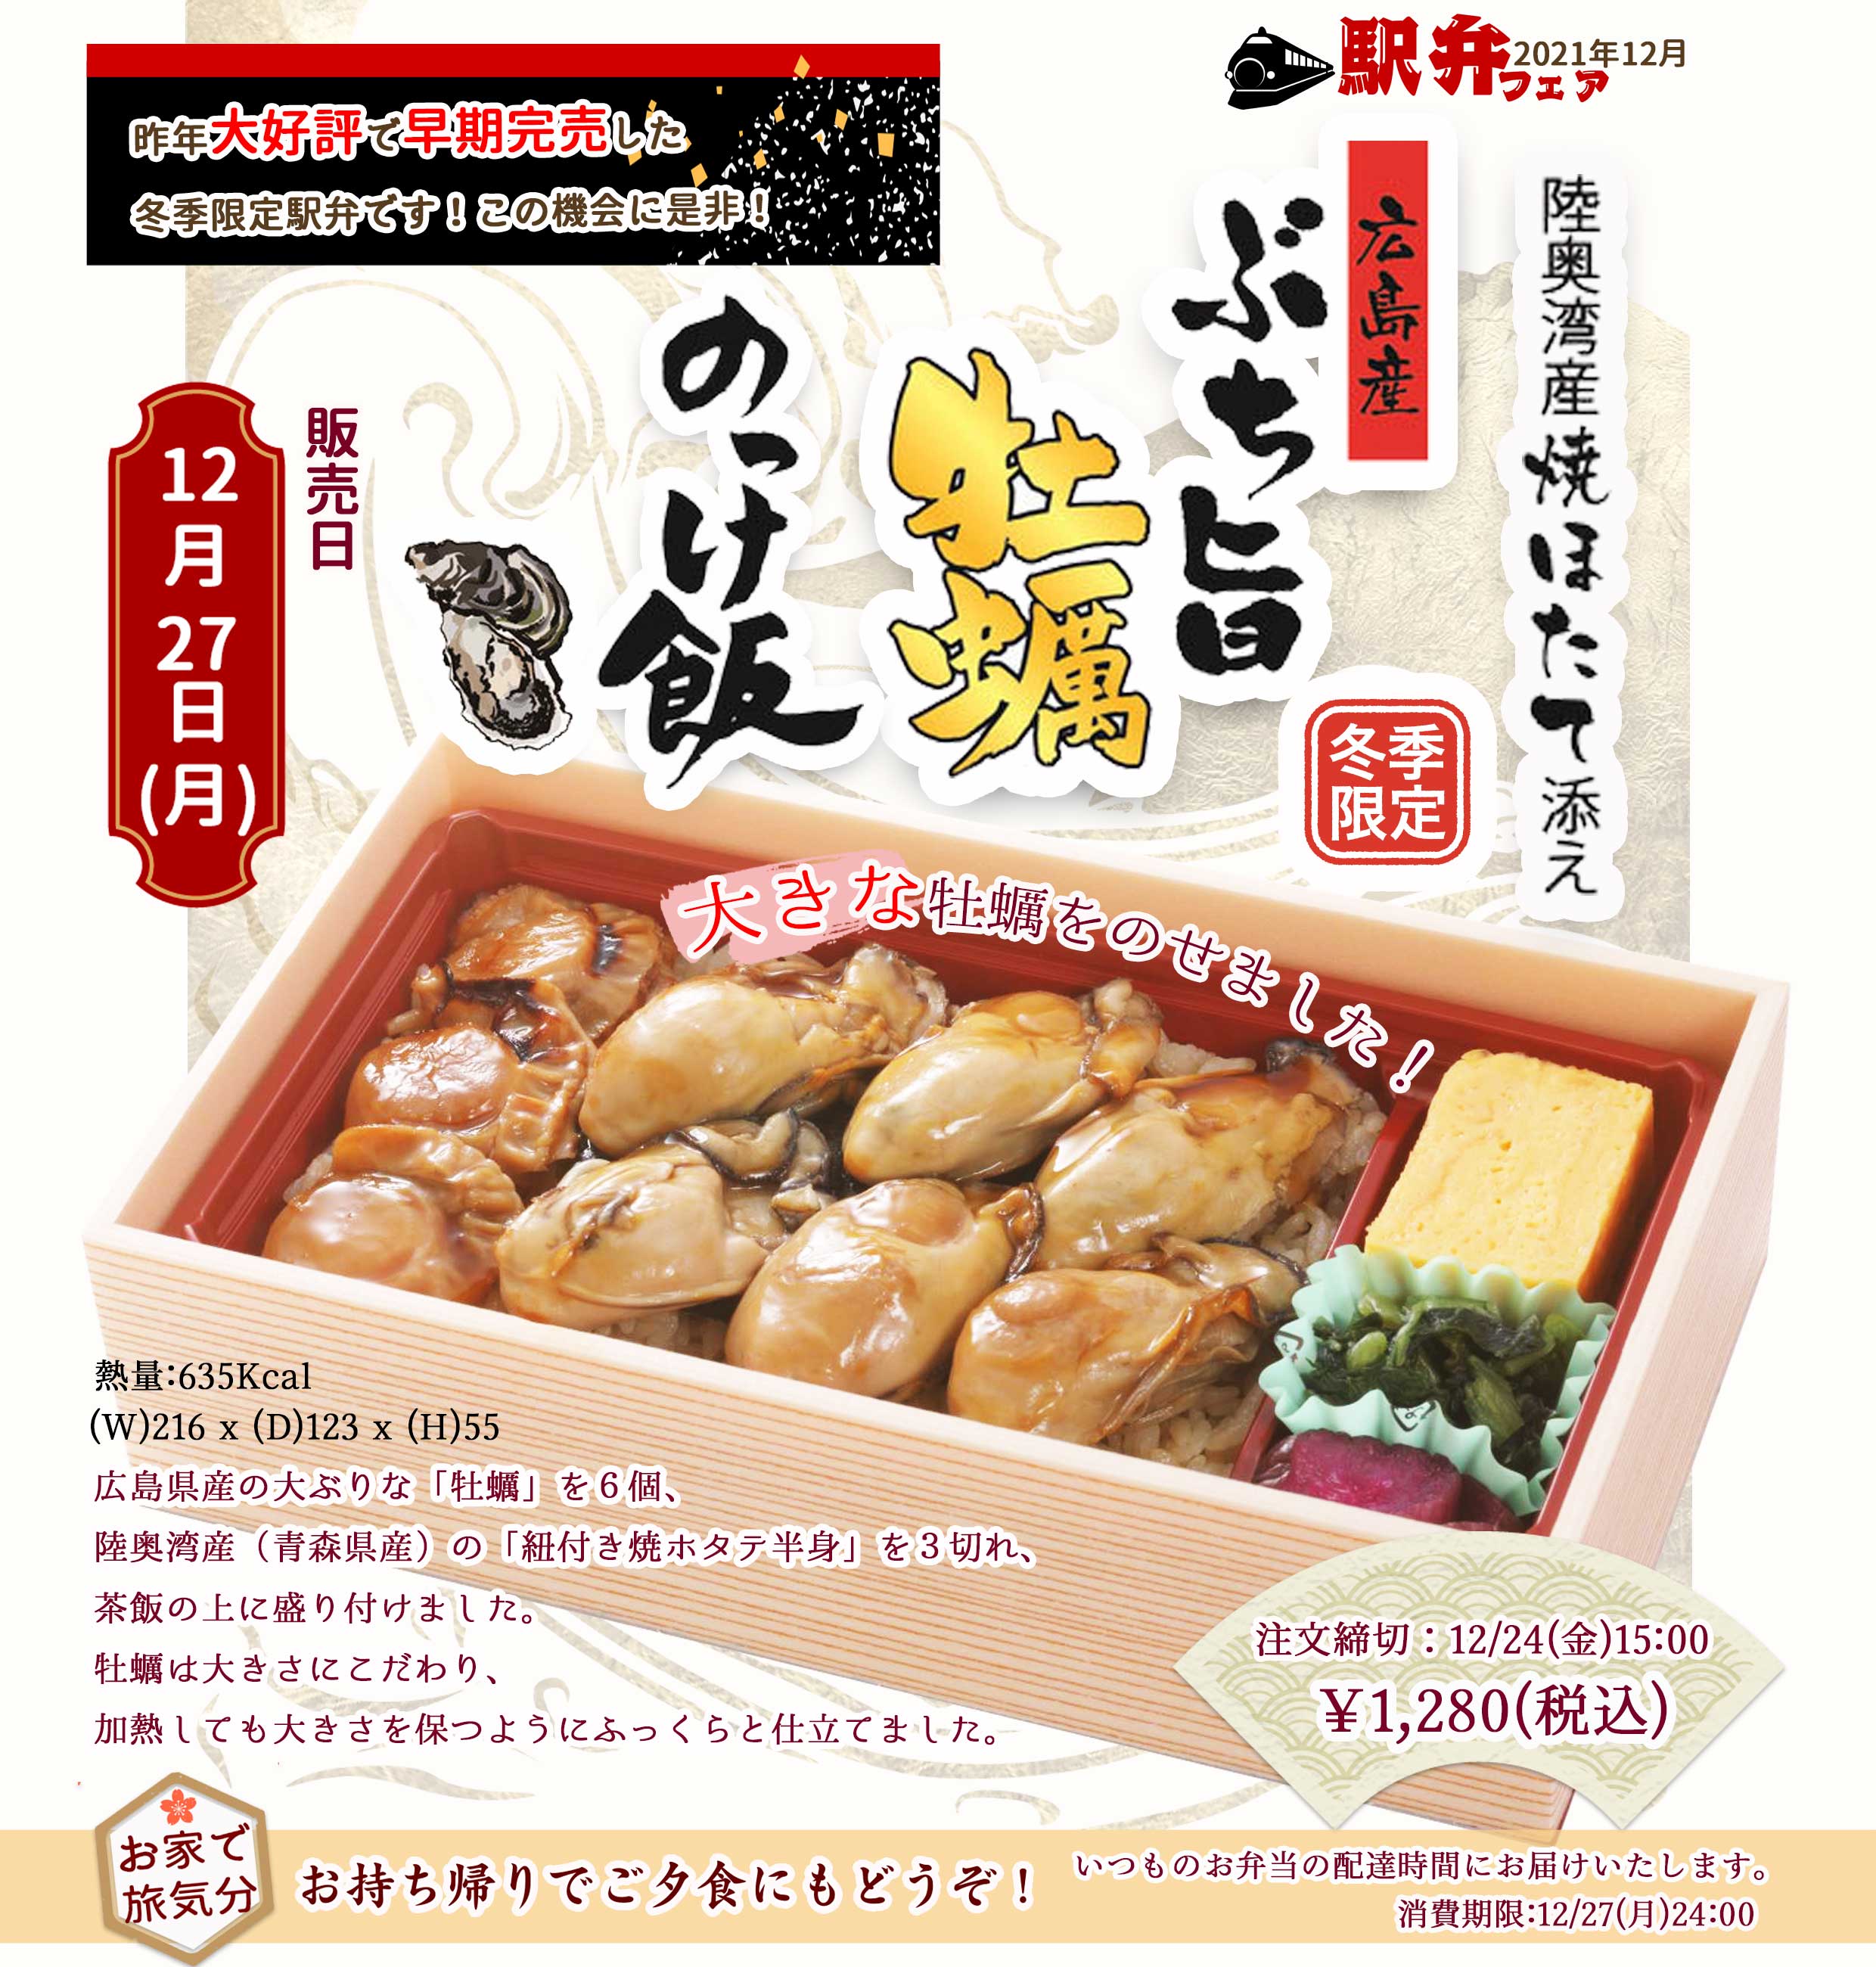 2021年12月27日(月)駅弁「広島産ぶち旨牡蠣のっけ飯」を販売します